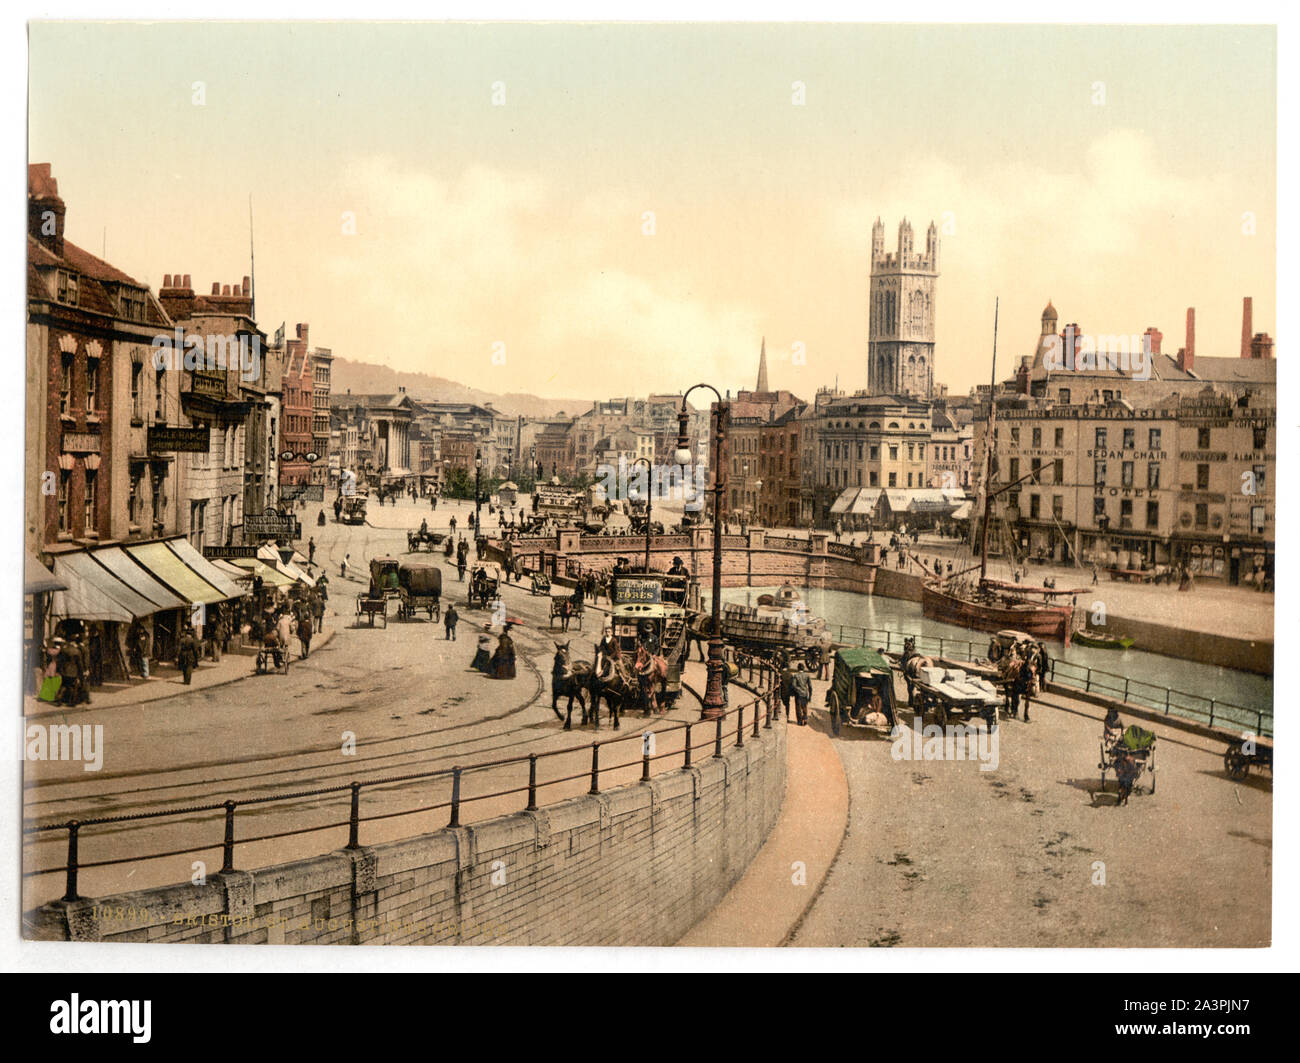 St Augustine's Bridge, Bristol, England fait partie de : vues sur les îles Britanniques, dans l'Photochrom collection imprimée. Banque D'Images